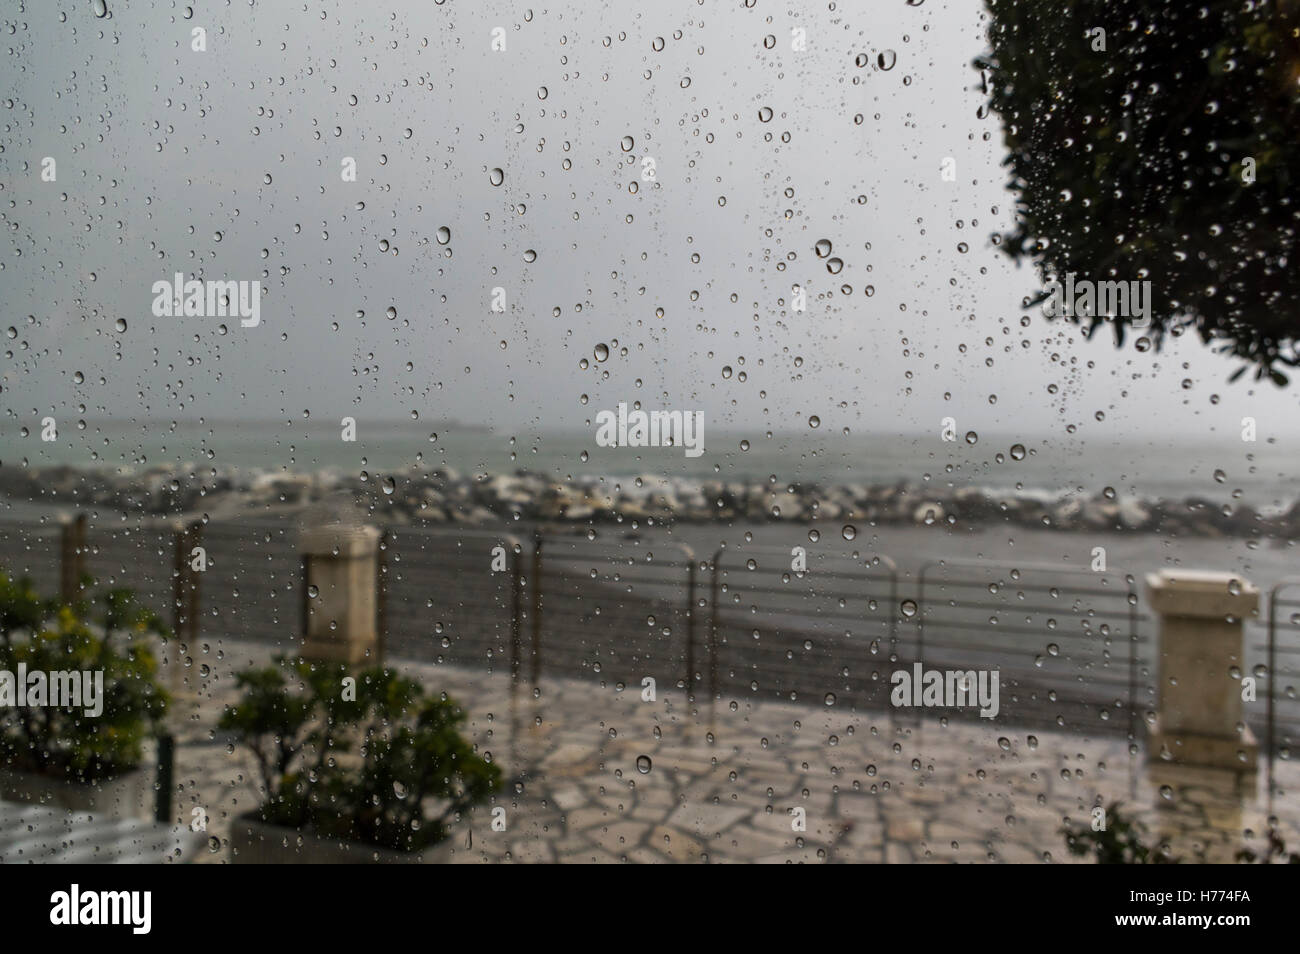 Gouttes de pluie sur une fenêtre pendant un orage. Bord de l'eau et mer Méditerranée en arrière-plan flou. Banque D'Images